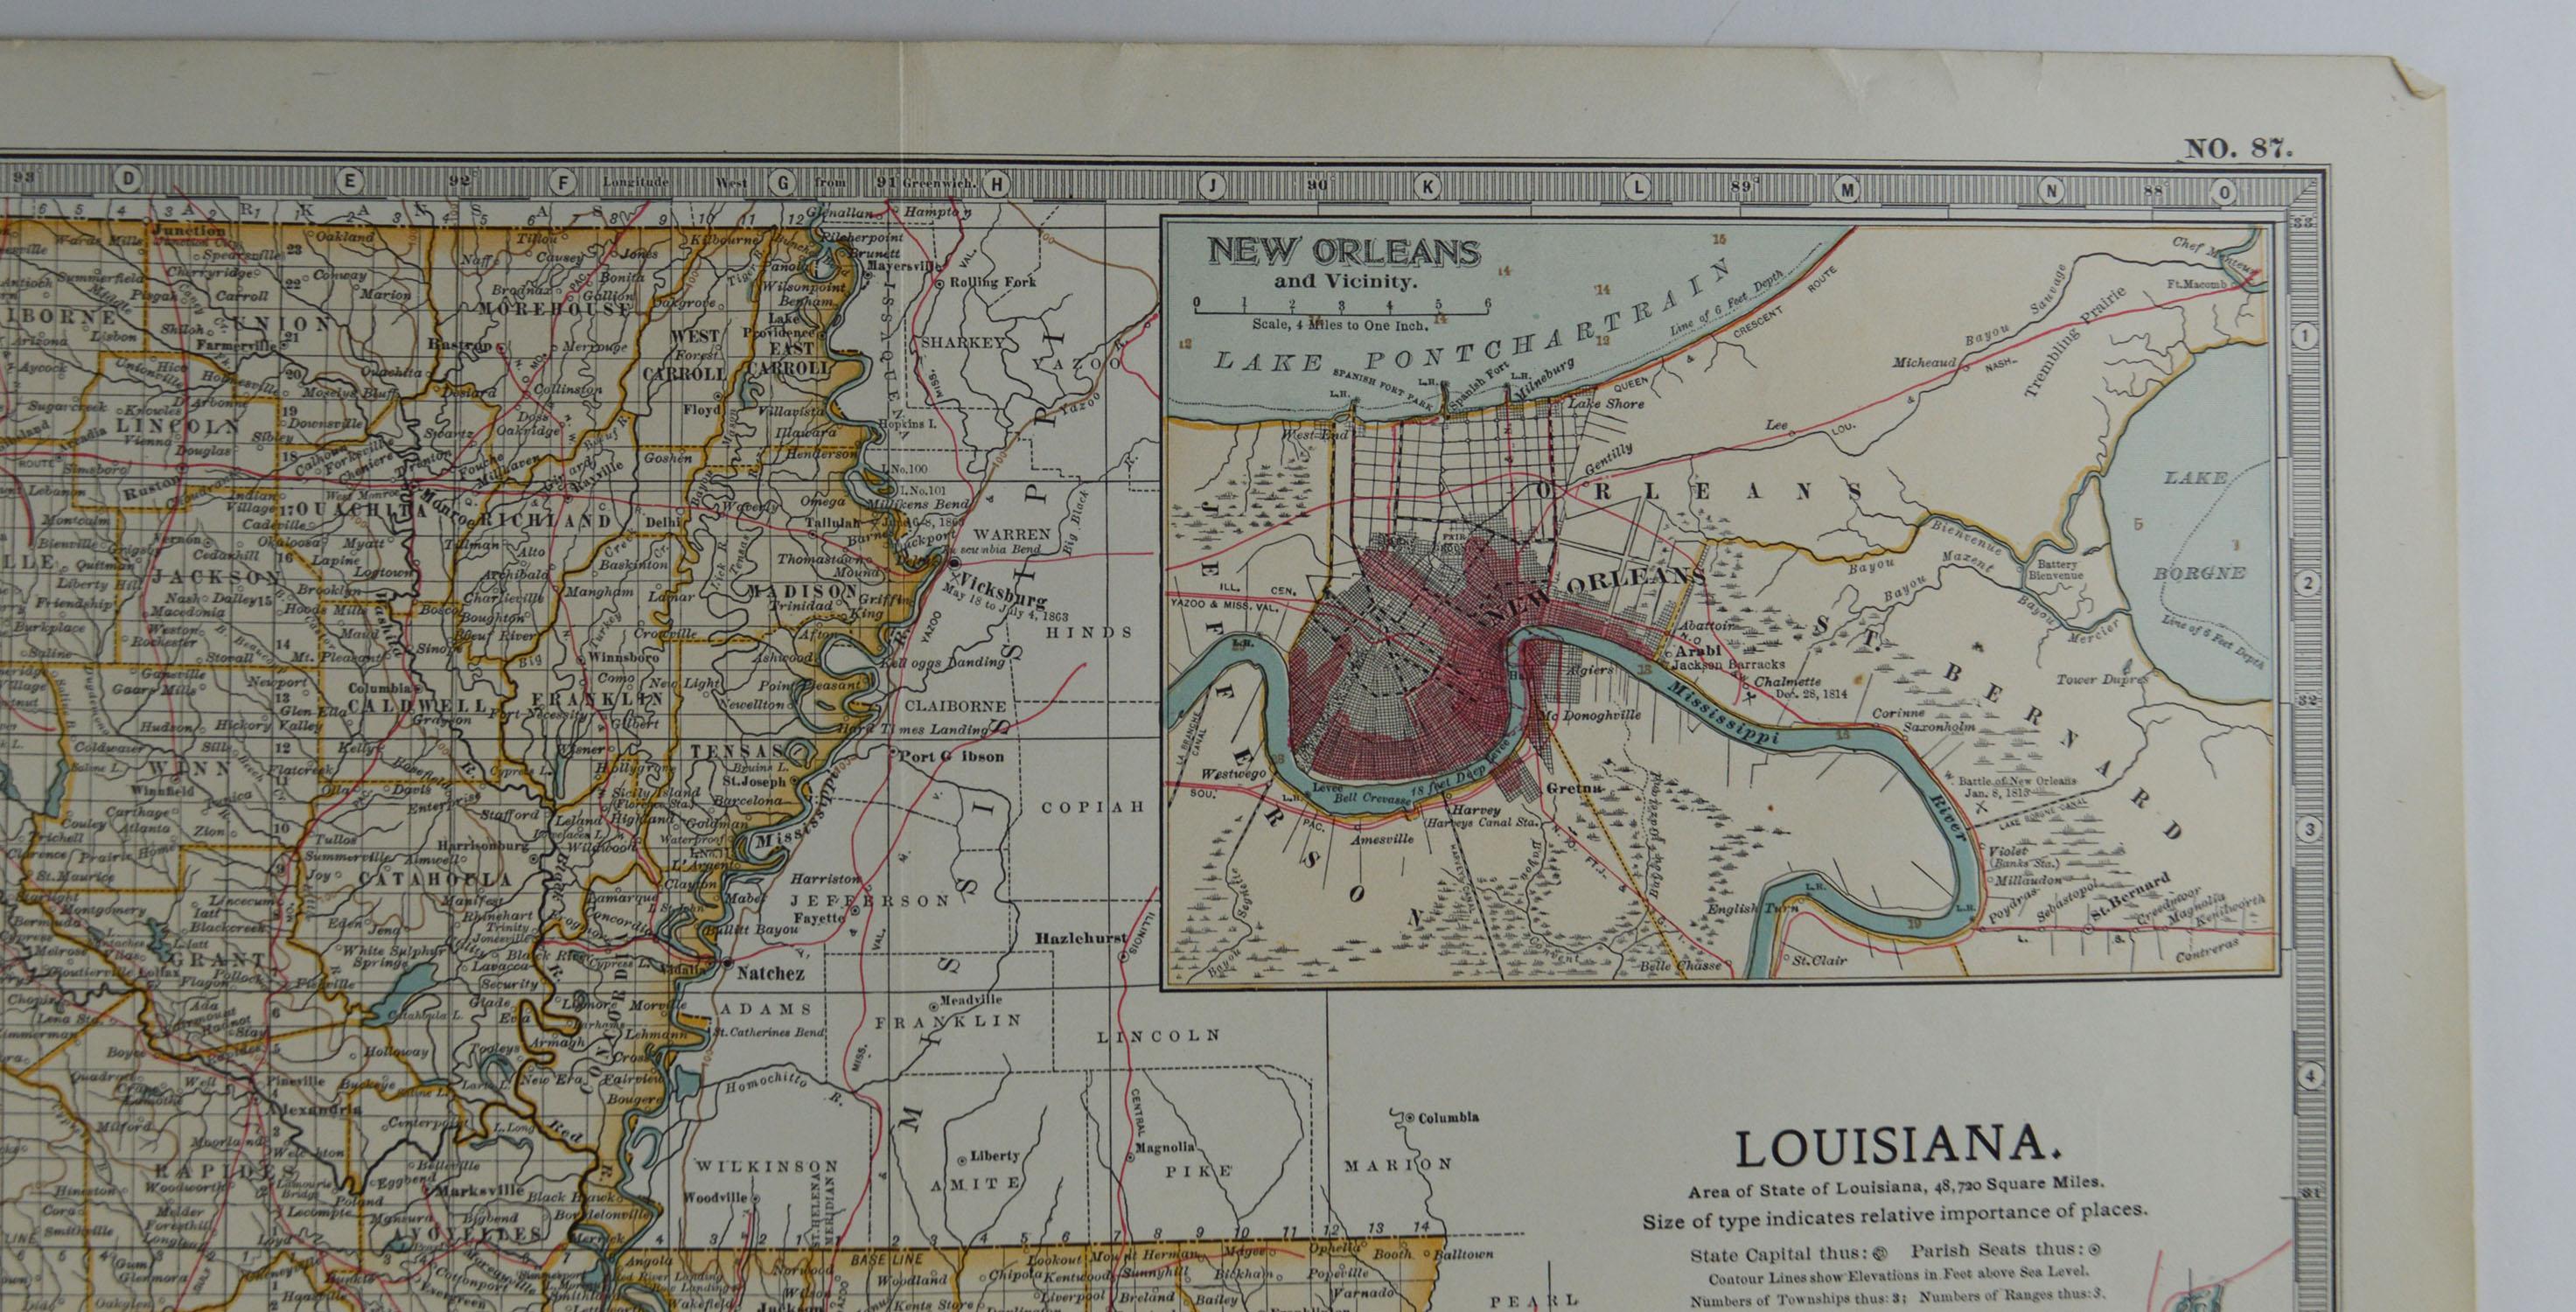 Other Original Antique Map of Louisiana, circa 1890